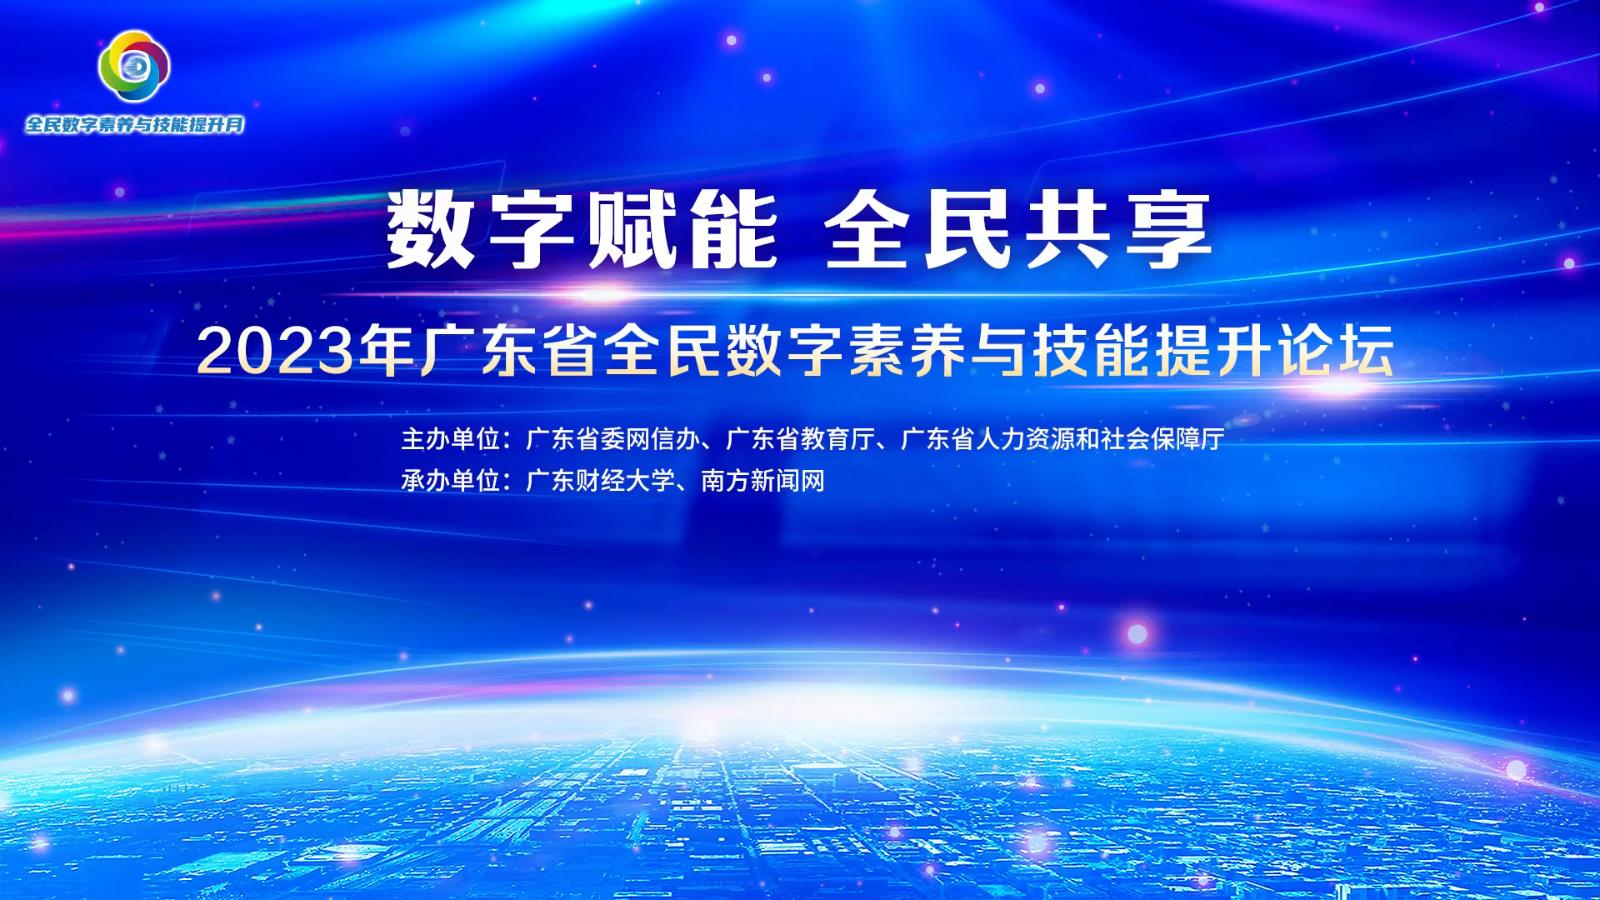 【专题】数字赋能 全民共享——2023年广东省全民数字素养与技能提升月